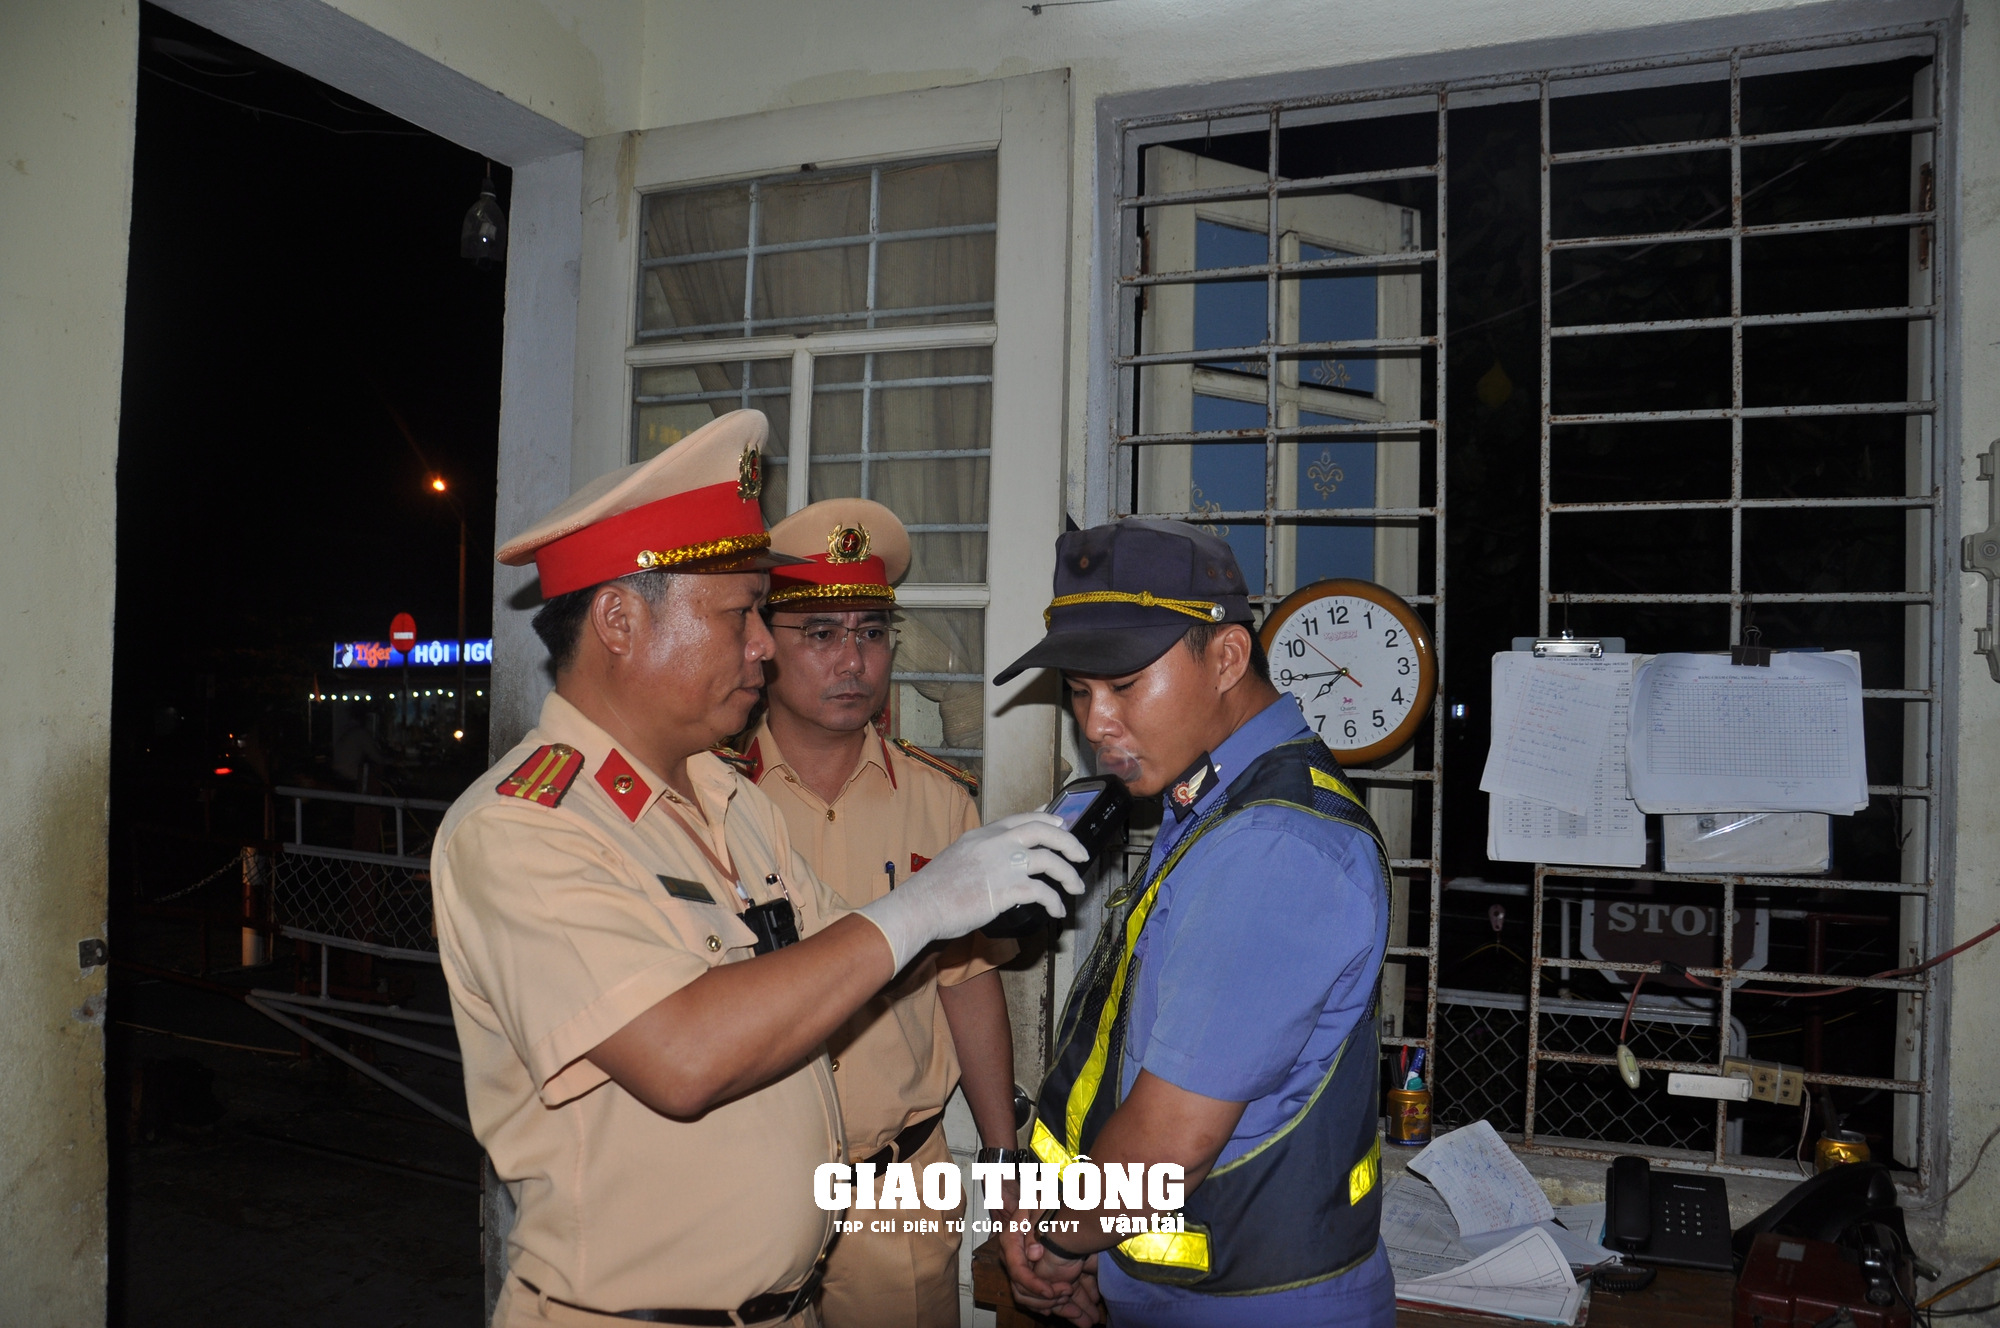 CSGT xuyên ngày đêm kiểm tra nồng độ cồn, ma túy nhân viên đường sắt ở Đà Nẵng - Ảnh 7.